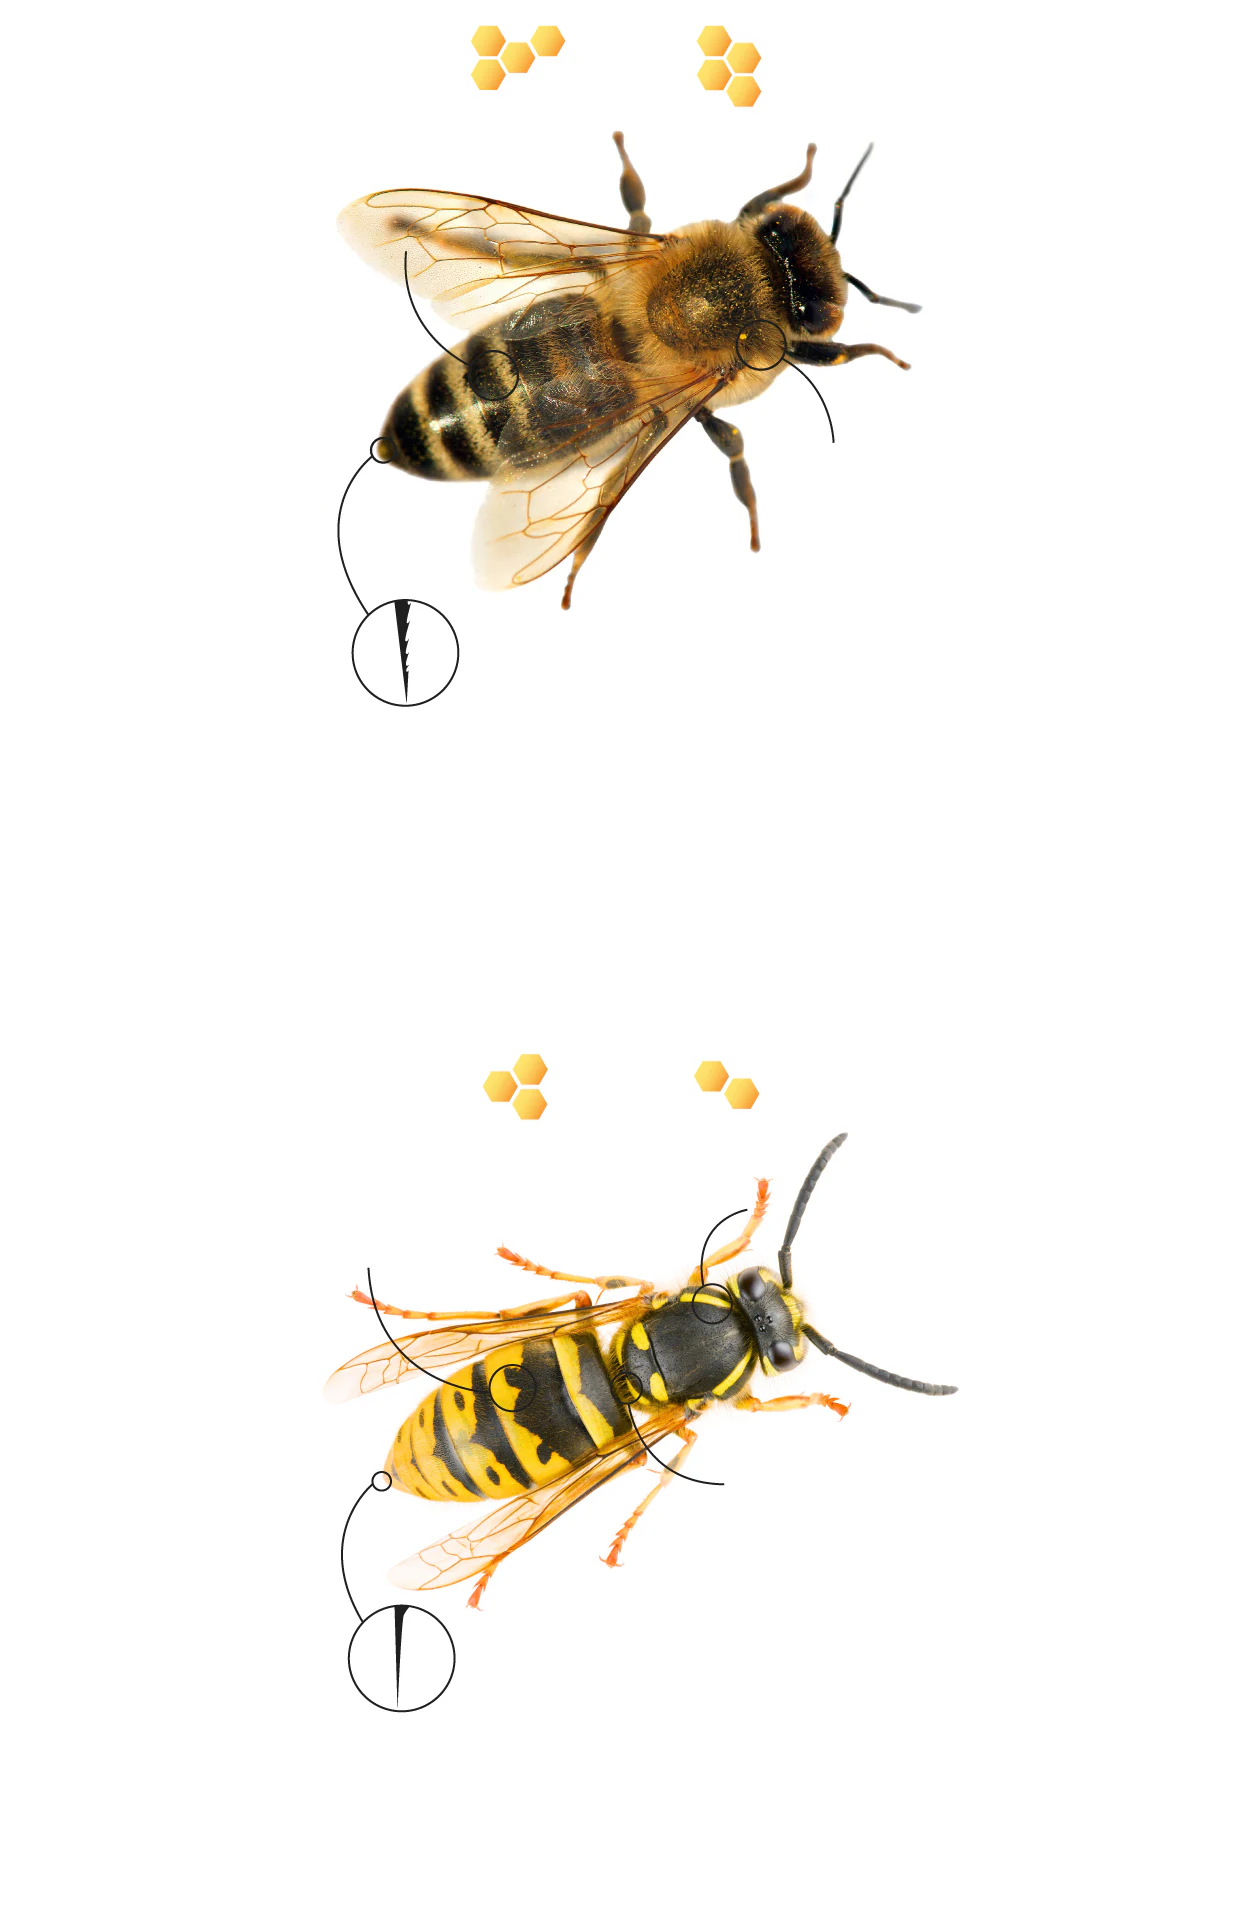 Picadura de avispa o abeja: cómo debemos actuar